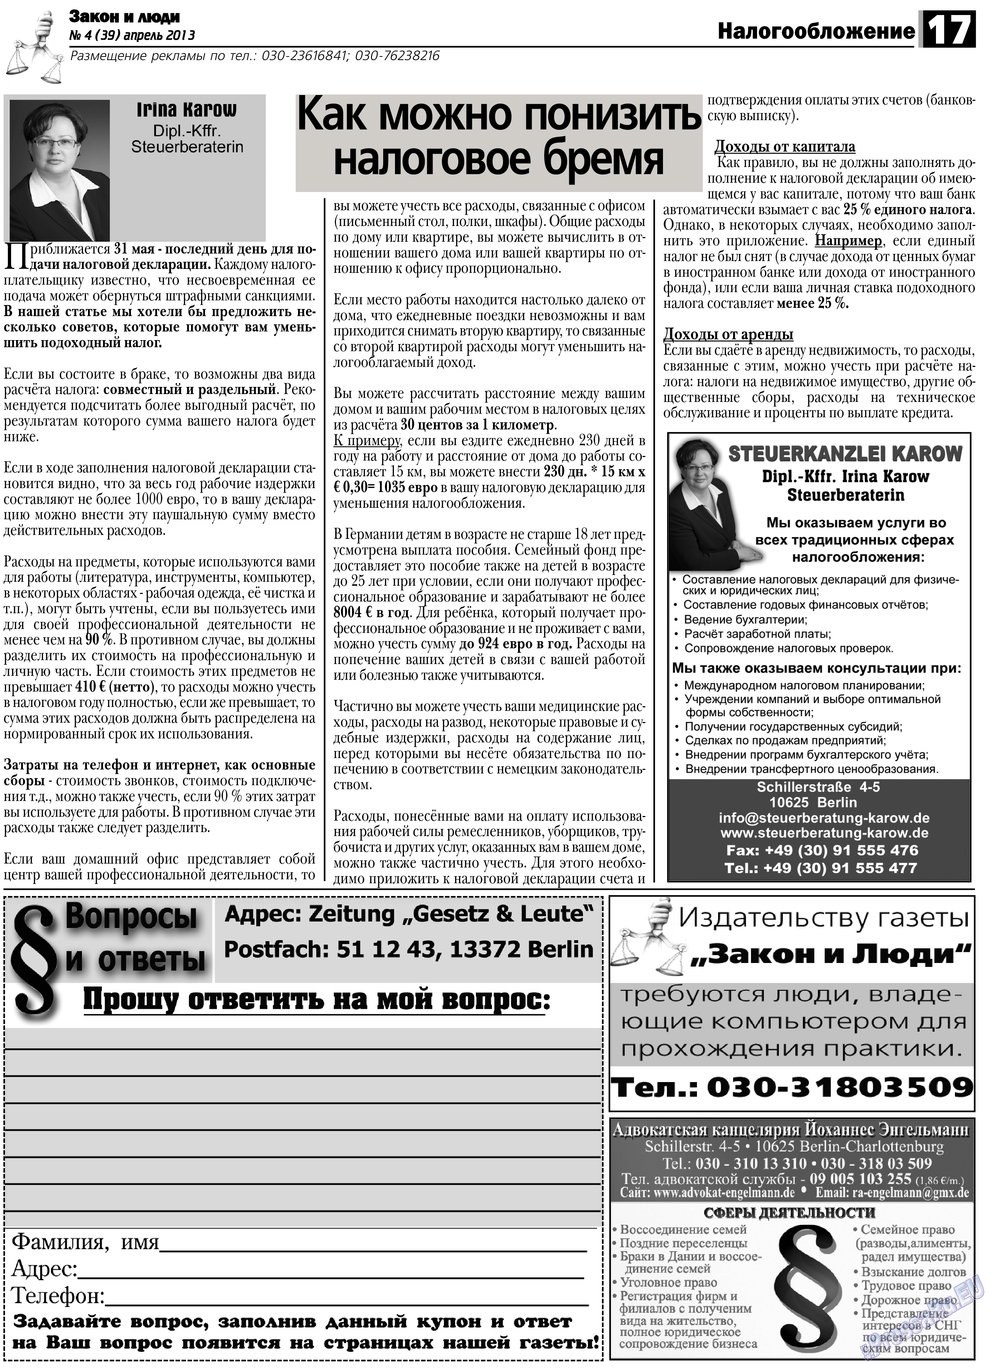 Закон и люди, газета. 2013 №4 стр.17